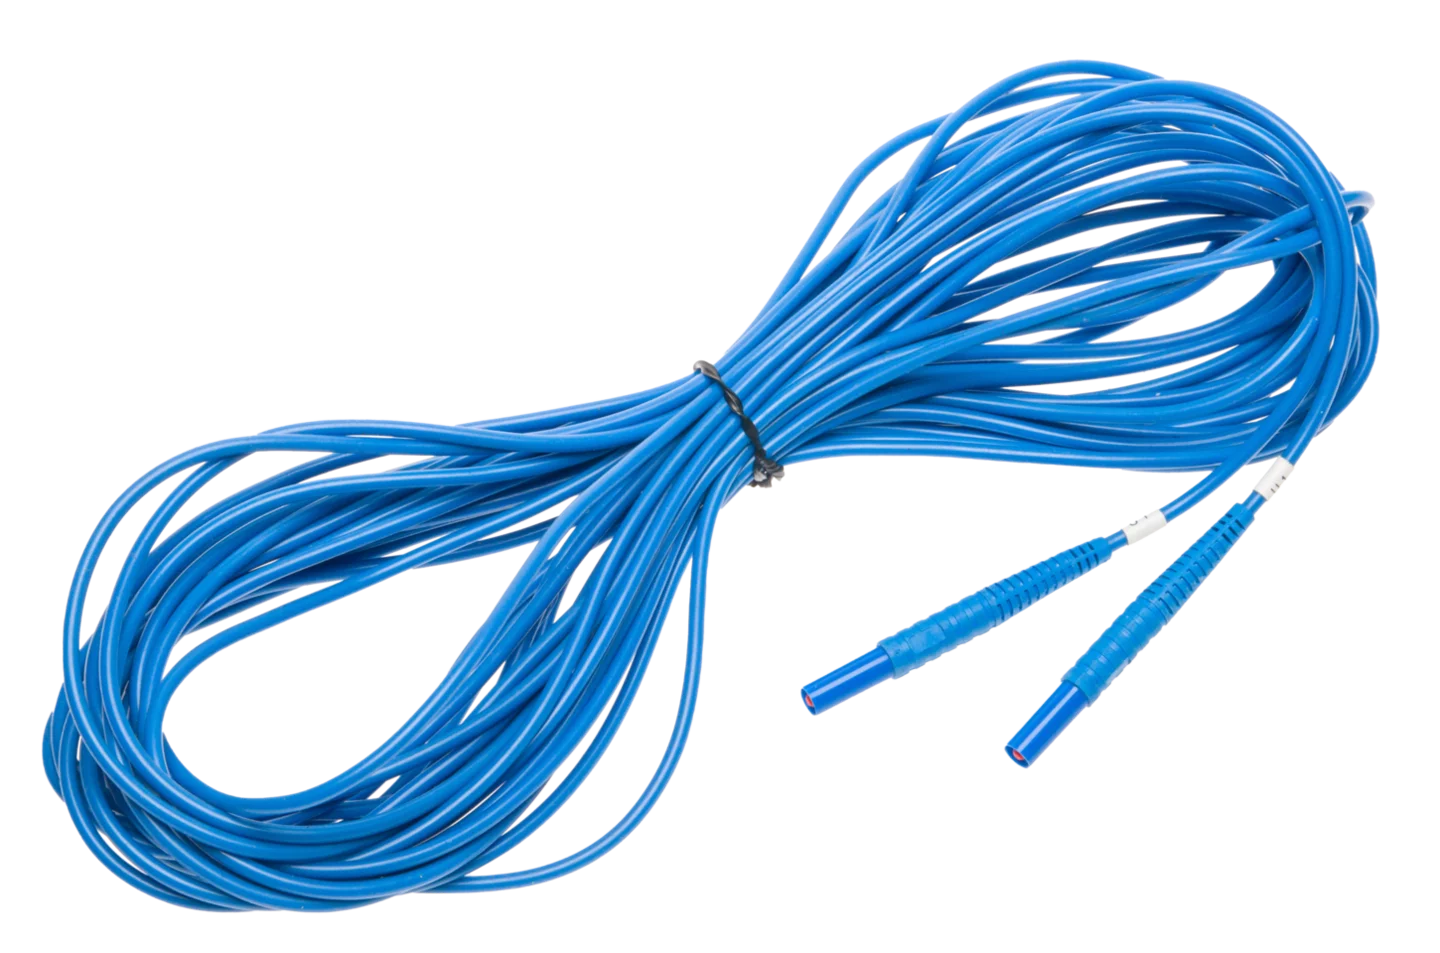 Test lead 15 m 1 kV (banana plugs) U1 blue